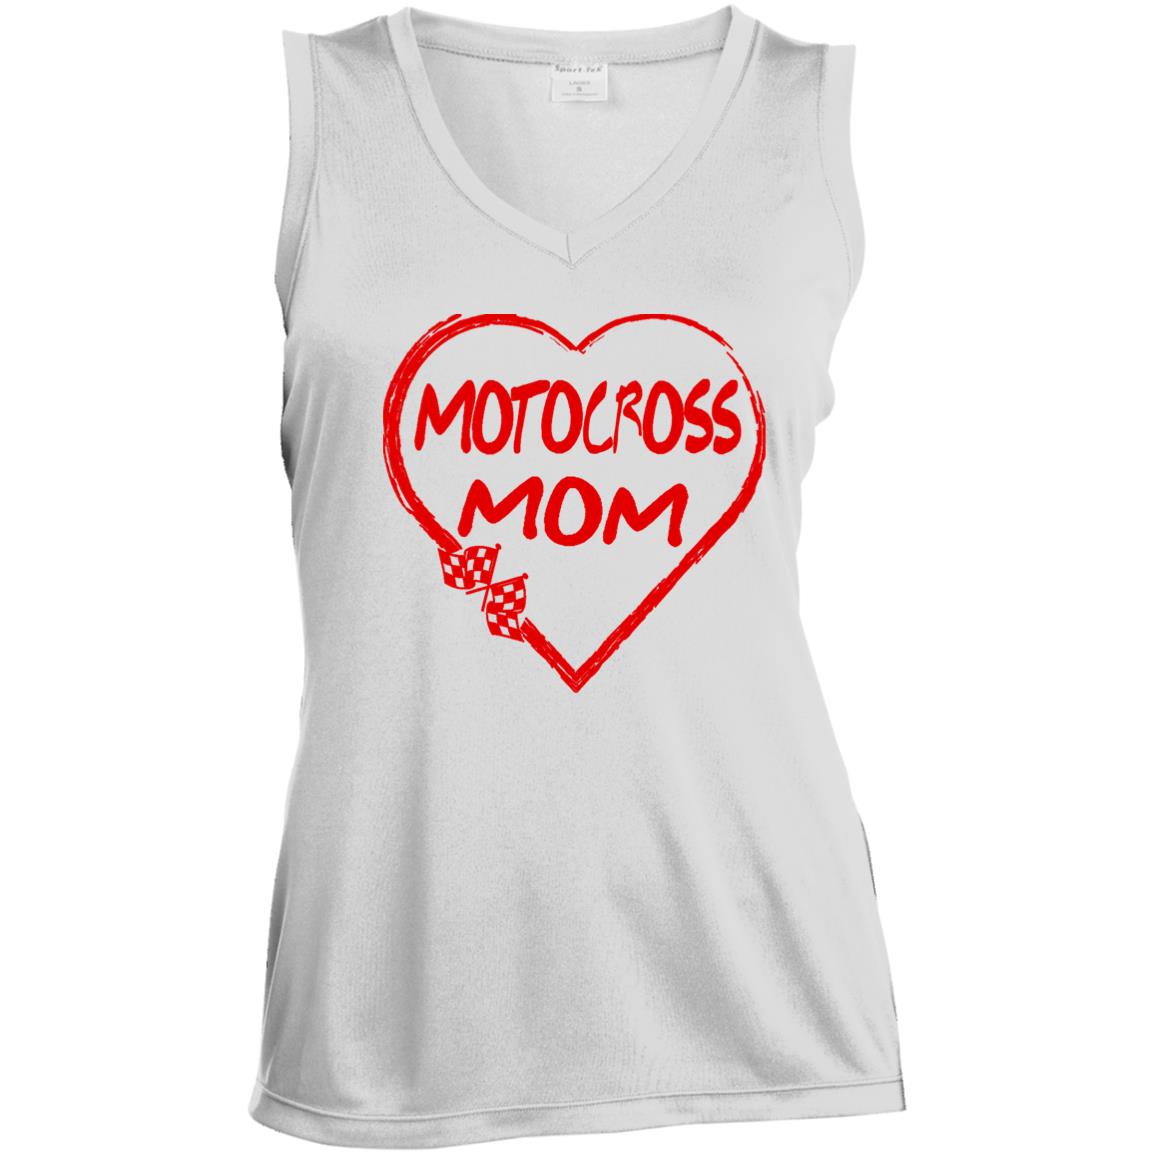 Motocross Mom Heart Ladies' Sleeveless V-Neck Performance Tee